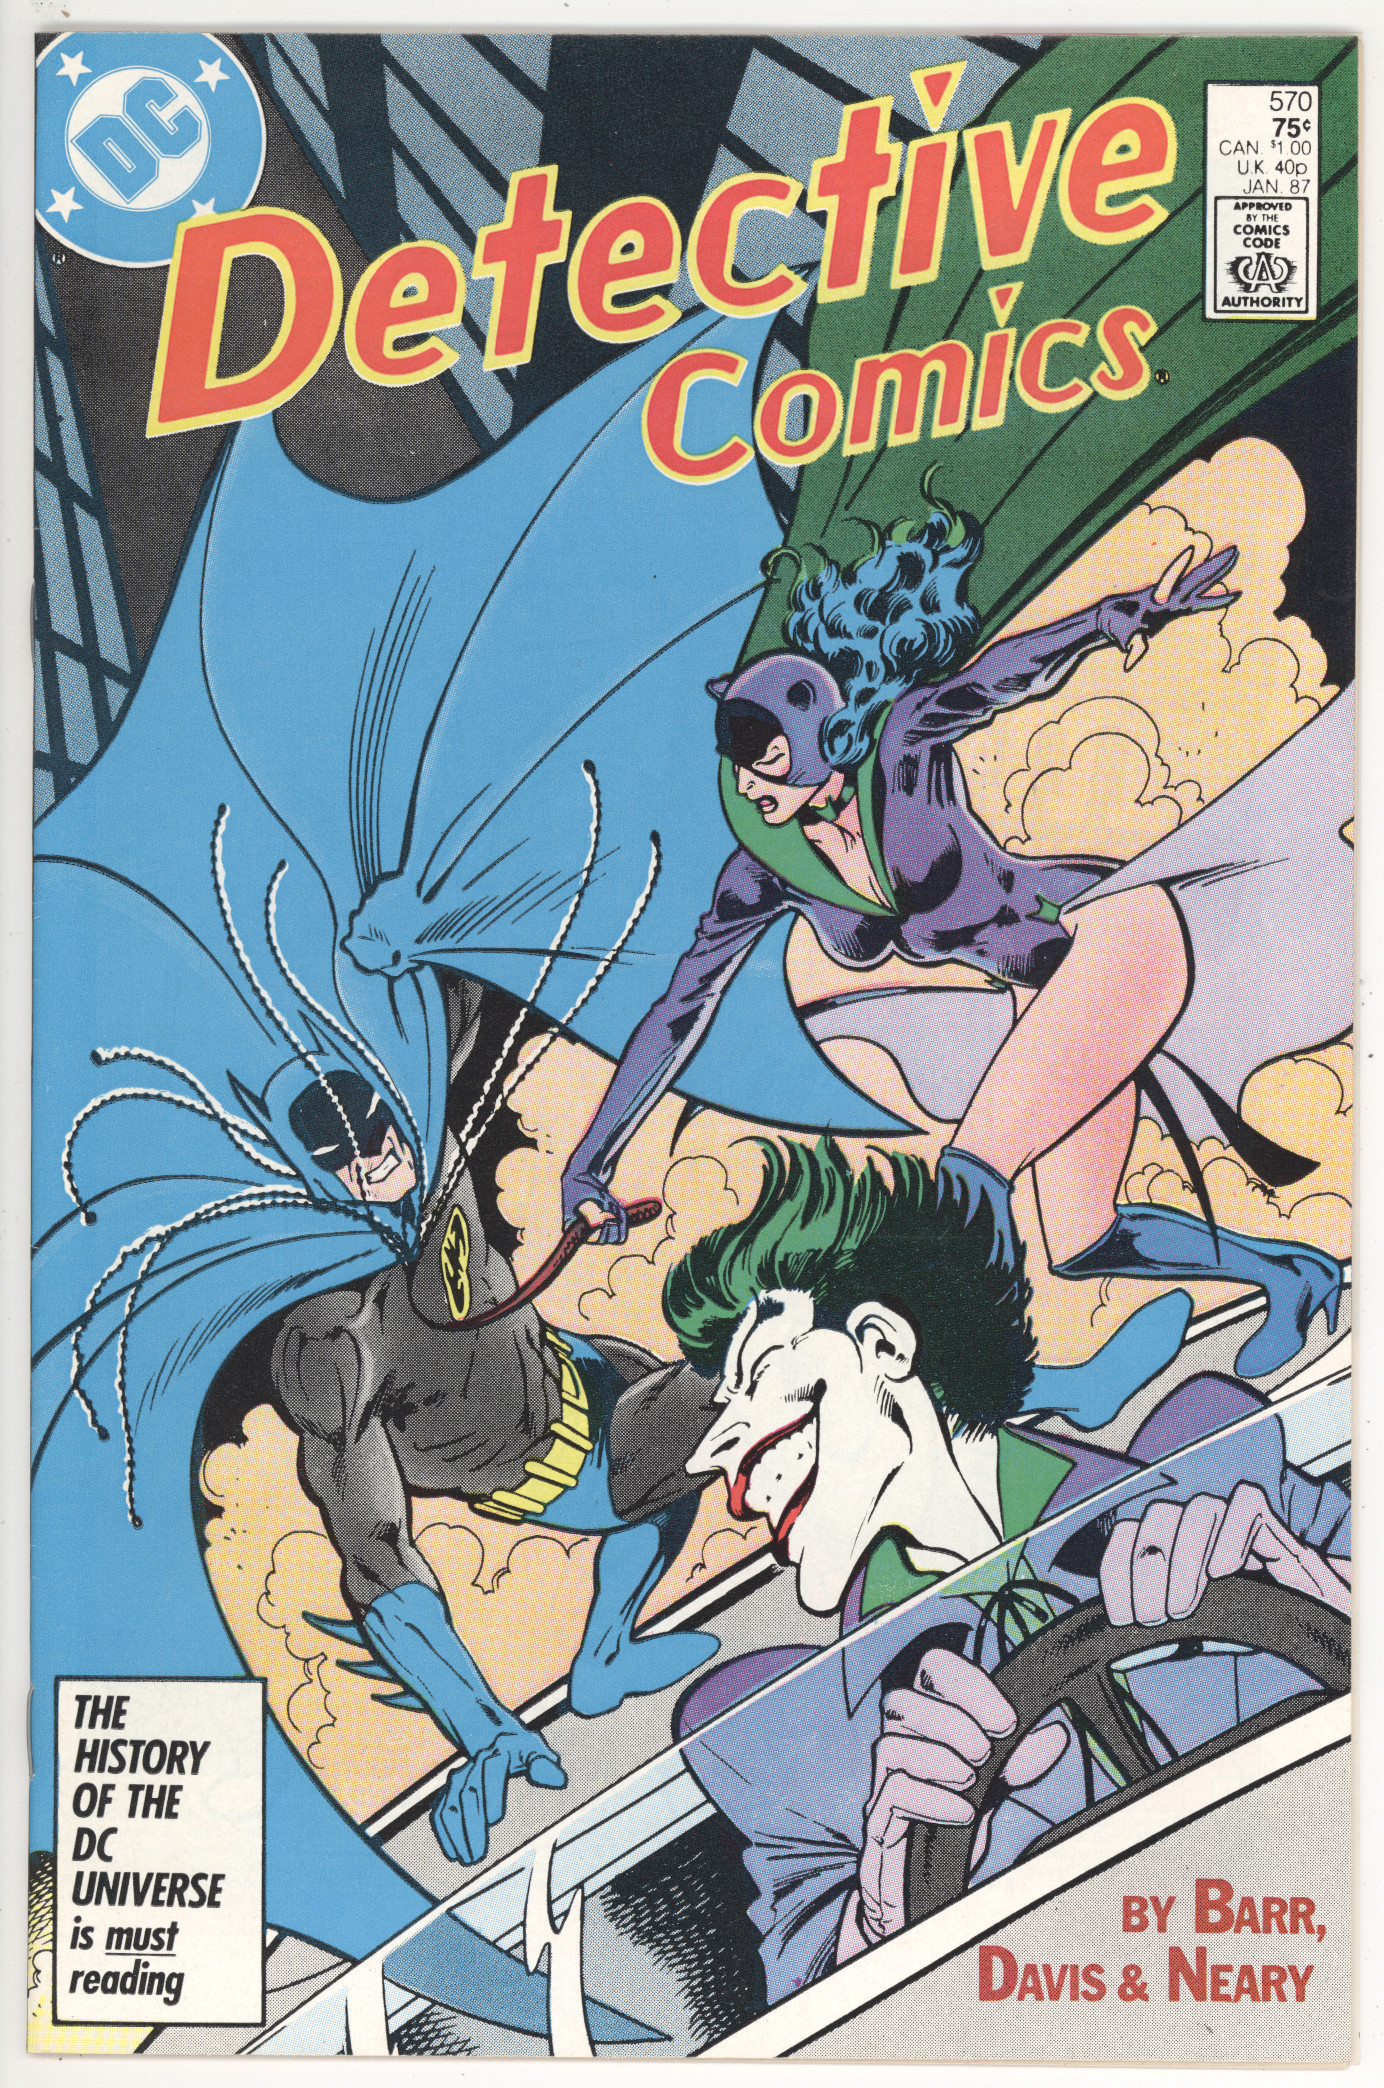 Detective Comics #570